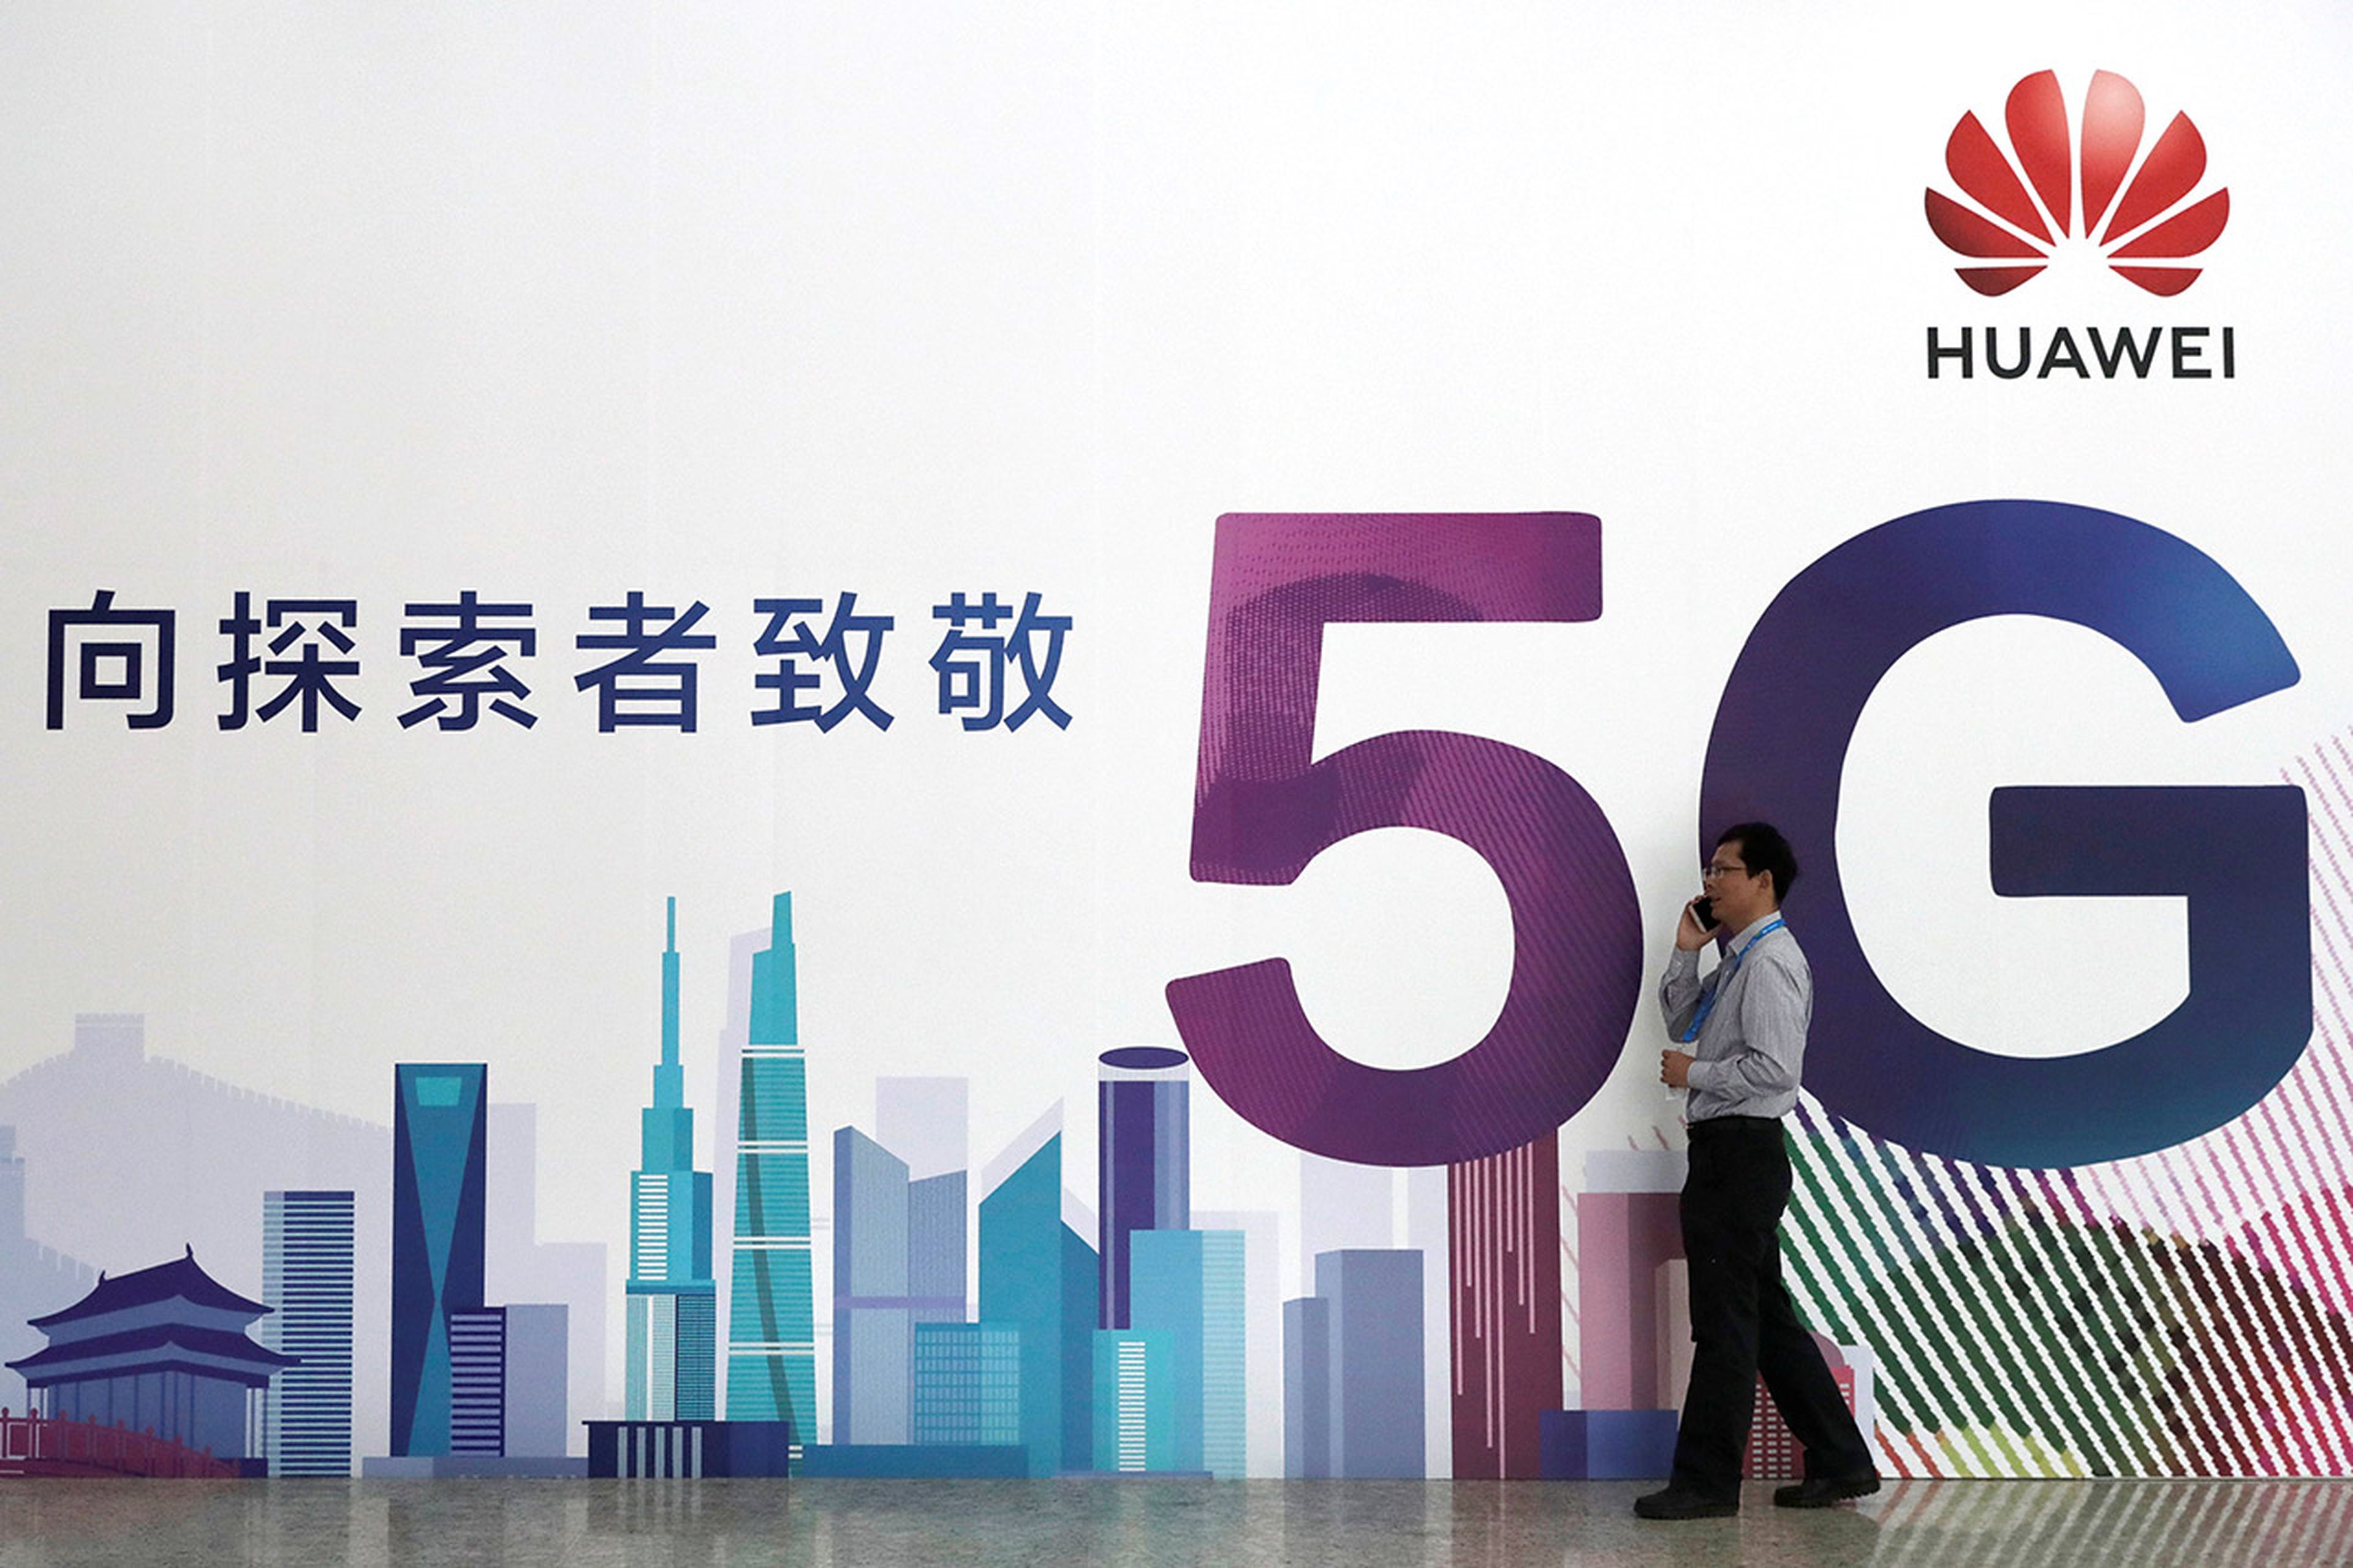 5G Huawei